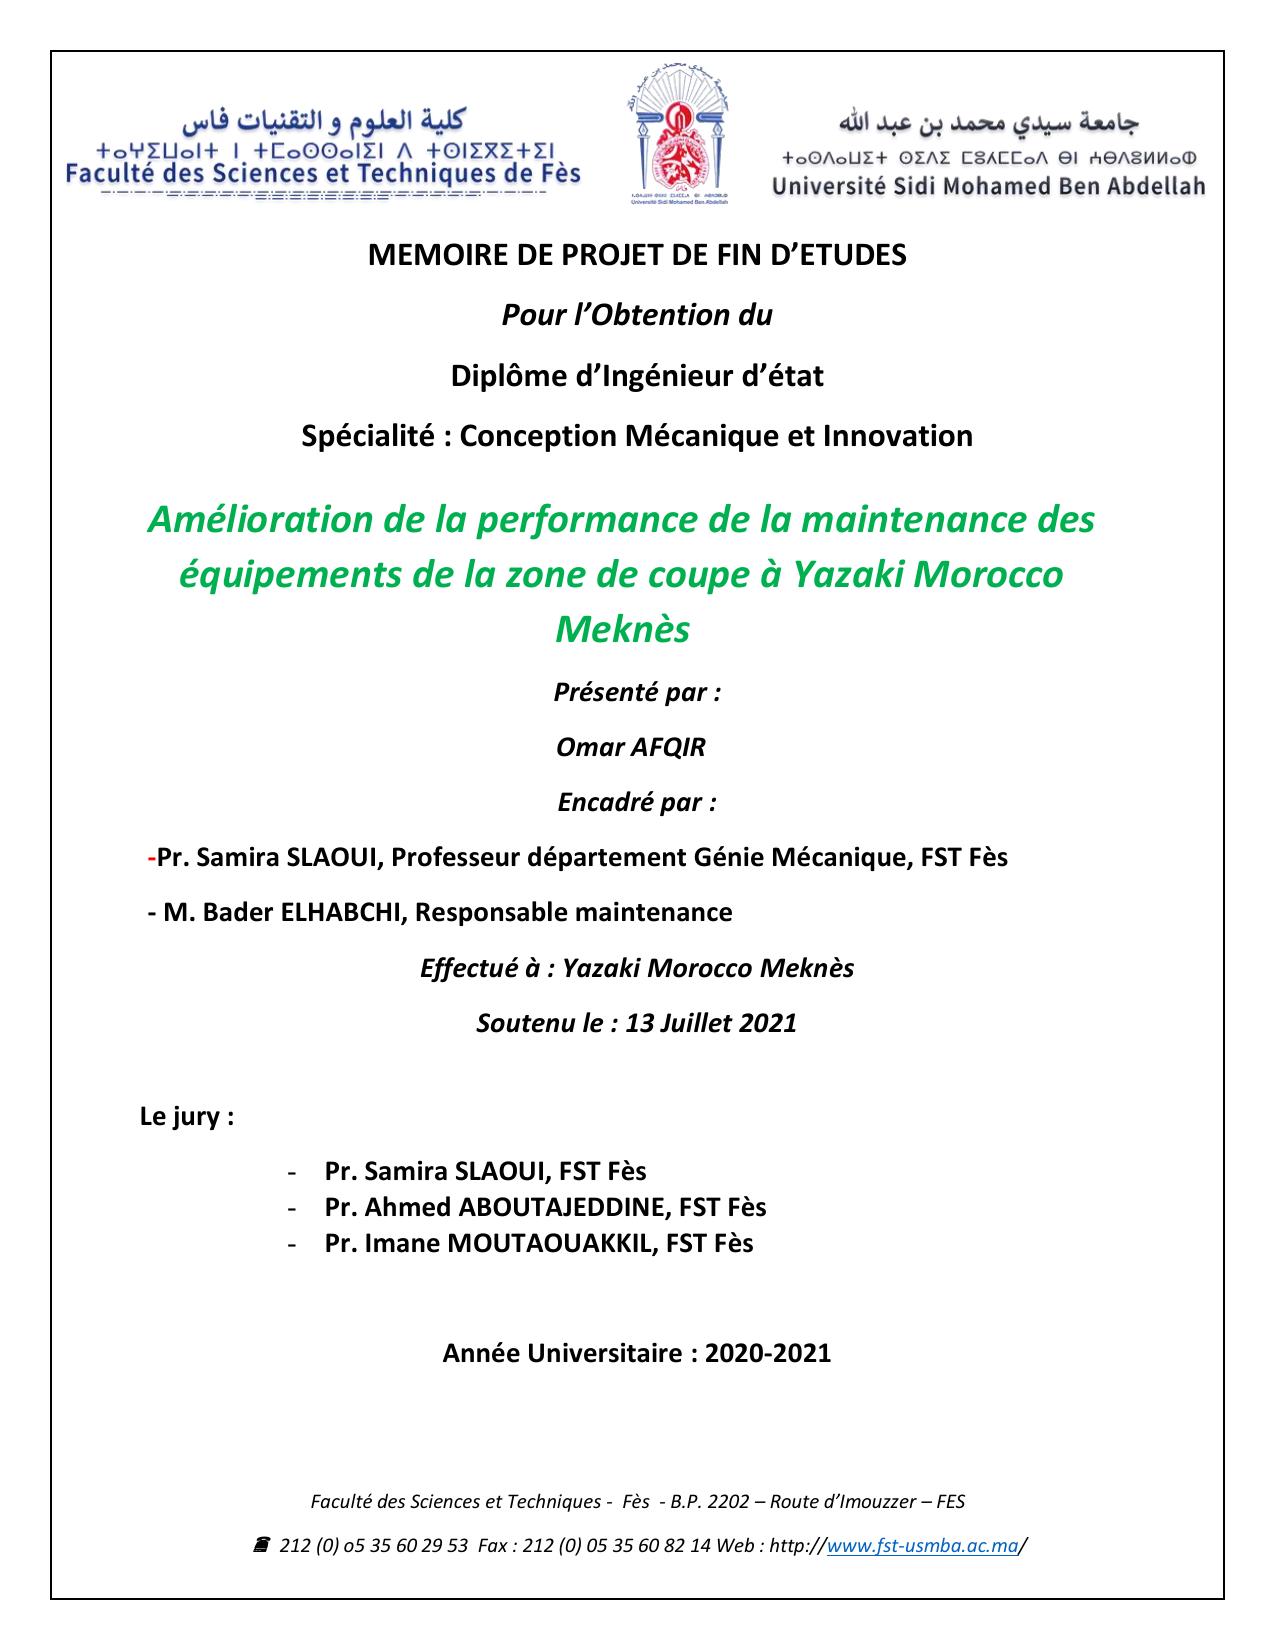 Amélioration de la performance de la maintenance des équipements de la zone de coupe à Yazaki Morocco Meknès